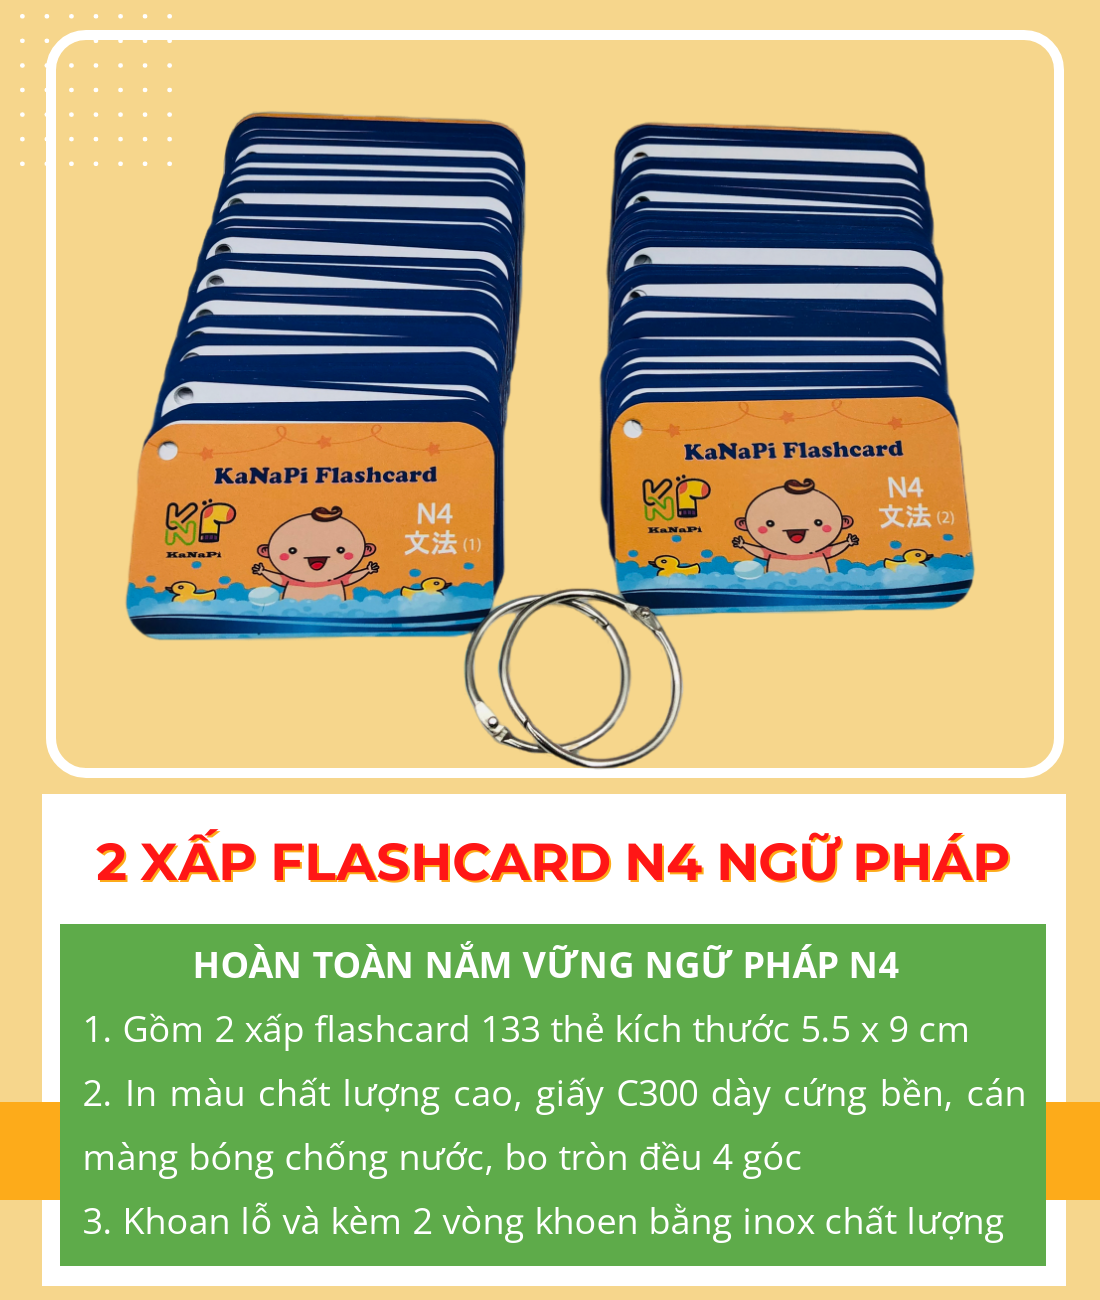 Kanapi Flashcard – Flashcard N4 Ngữ Pháp (2 xấp)